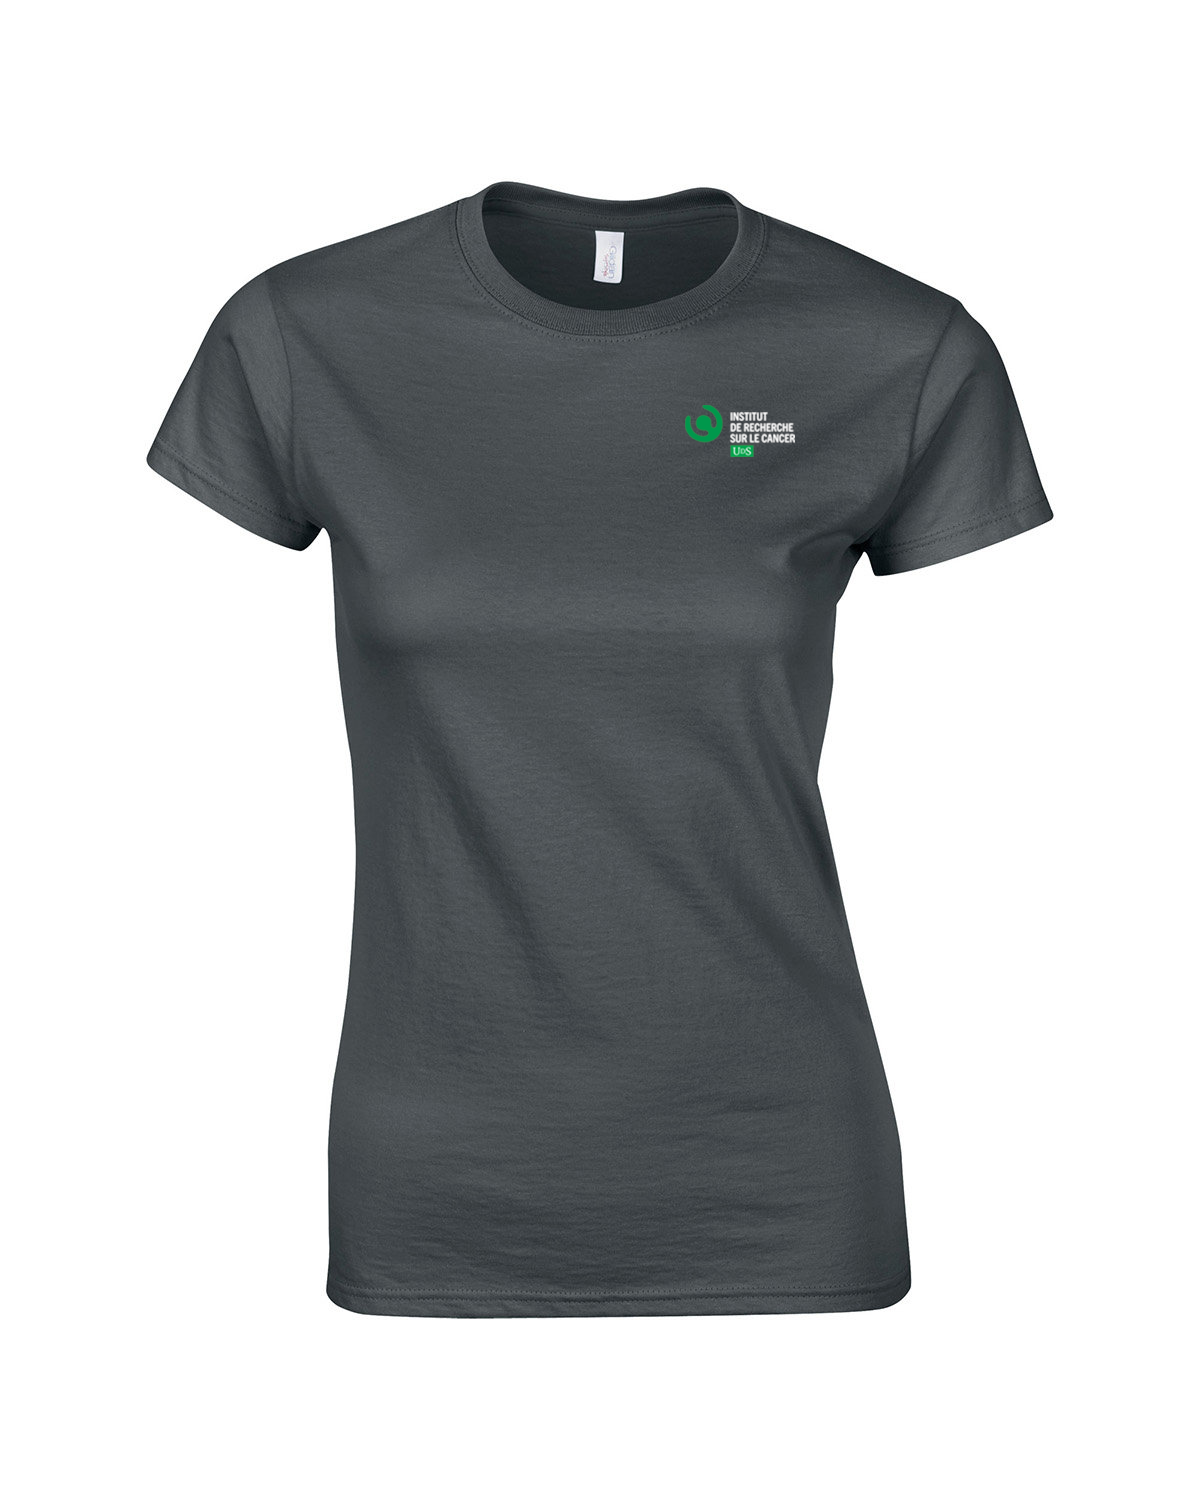 Women's short-sleeved t-shirt #G640L-IRCUS-LOGO